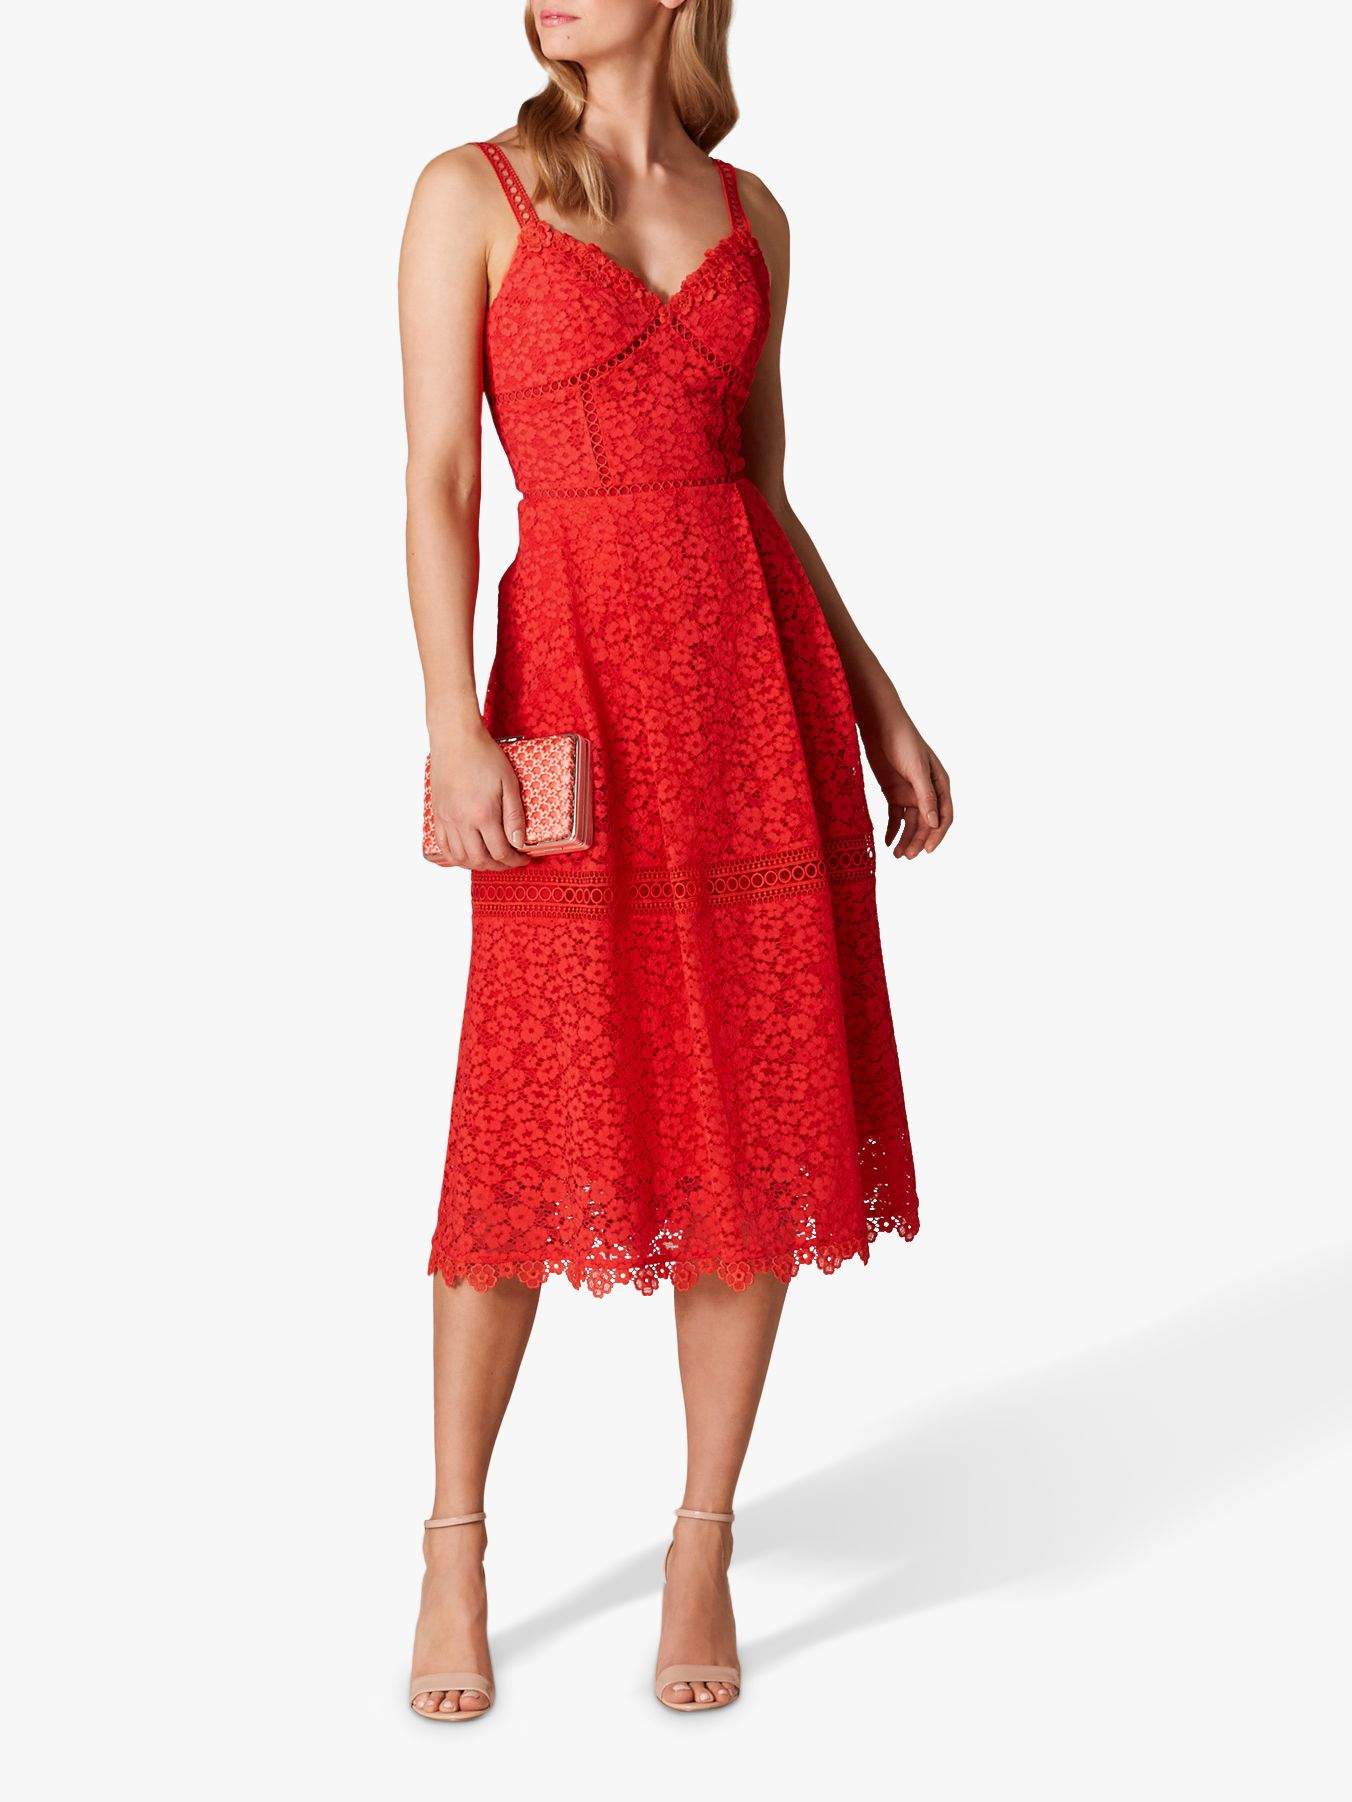 karen millen red lace dress